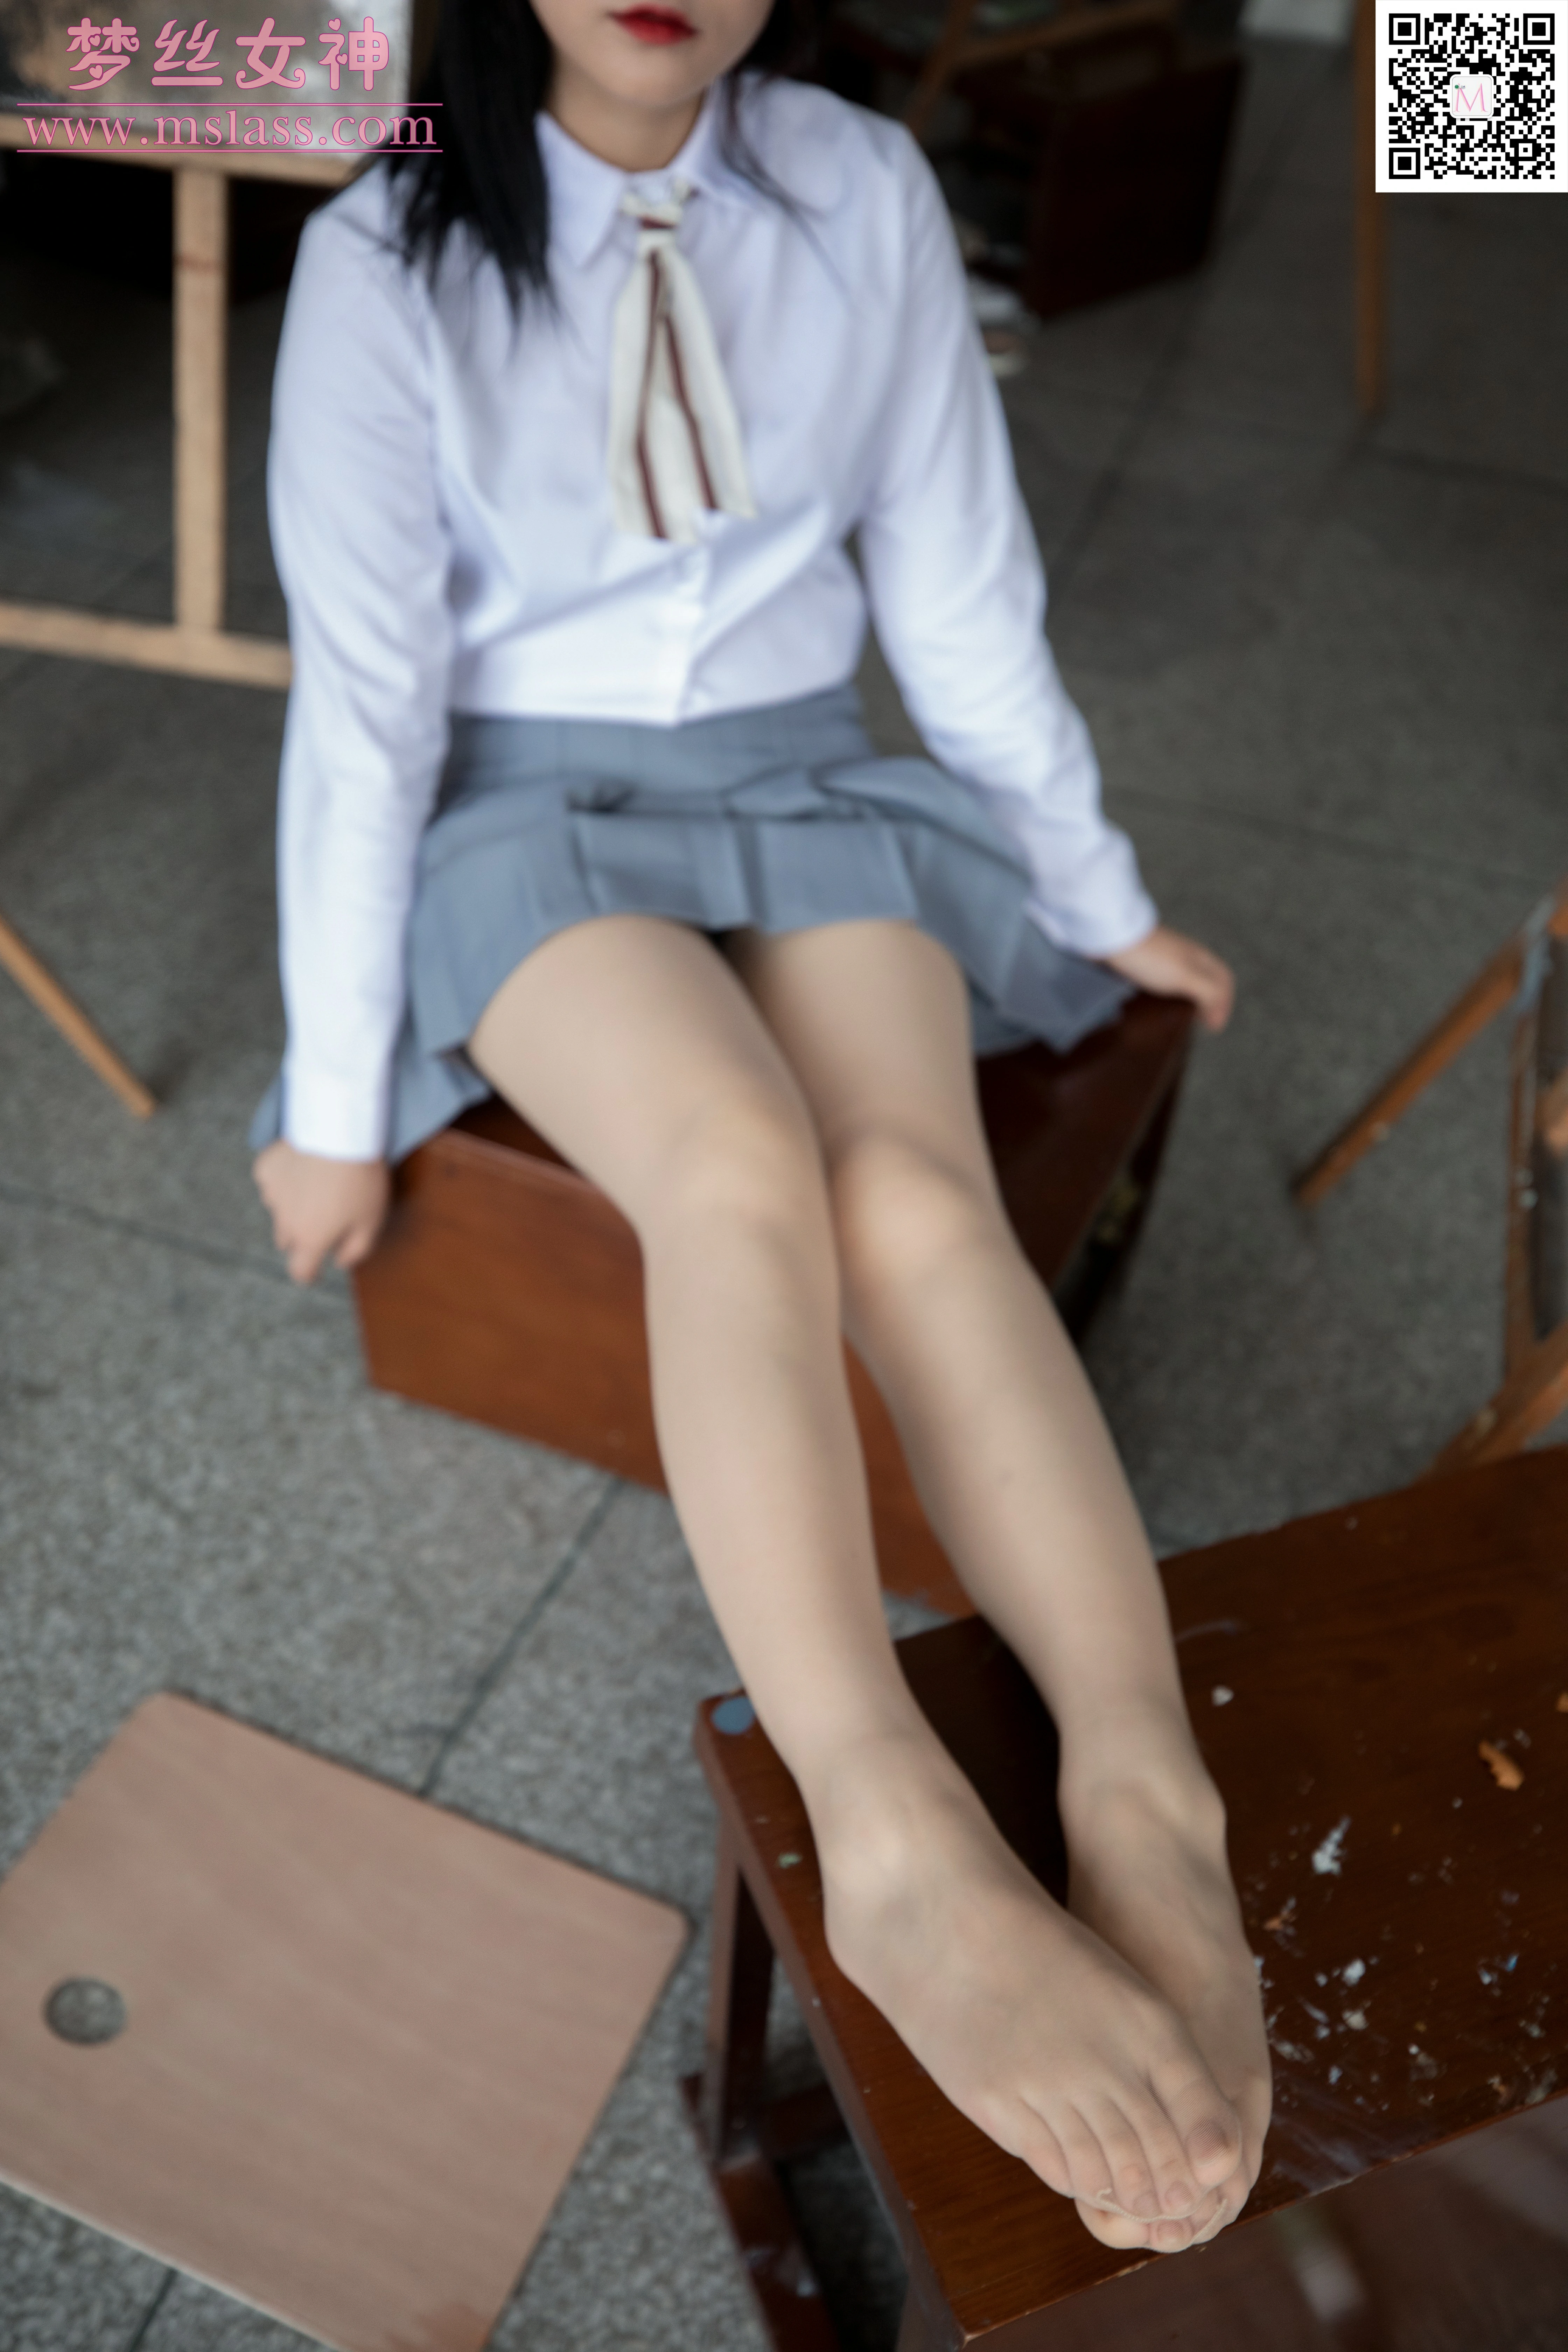 [MSLASS梦丝女神]NO.049 画室乘乘女 恬恬 日本高中女生制服与灰色短裙加肉色丝袜美腿性感私房写真集,